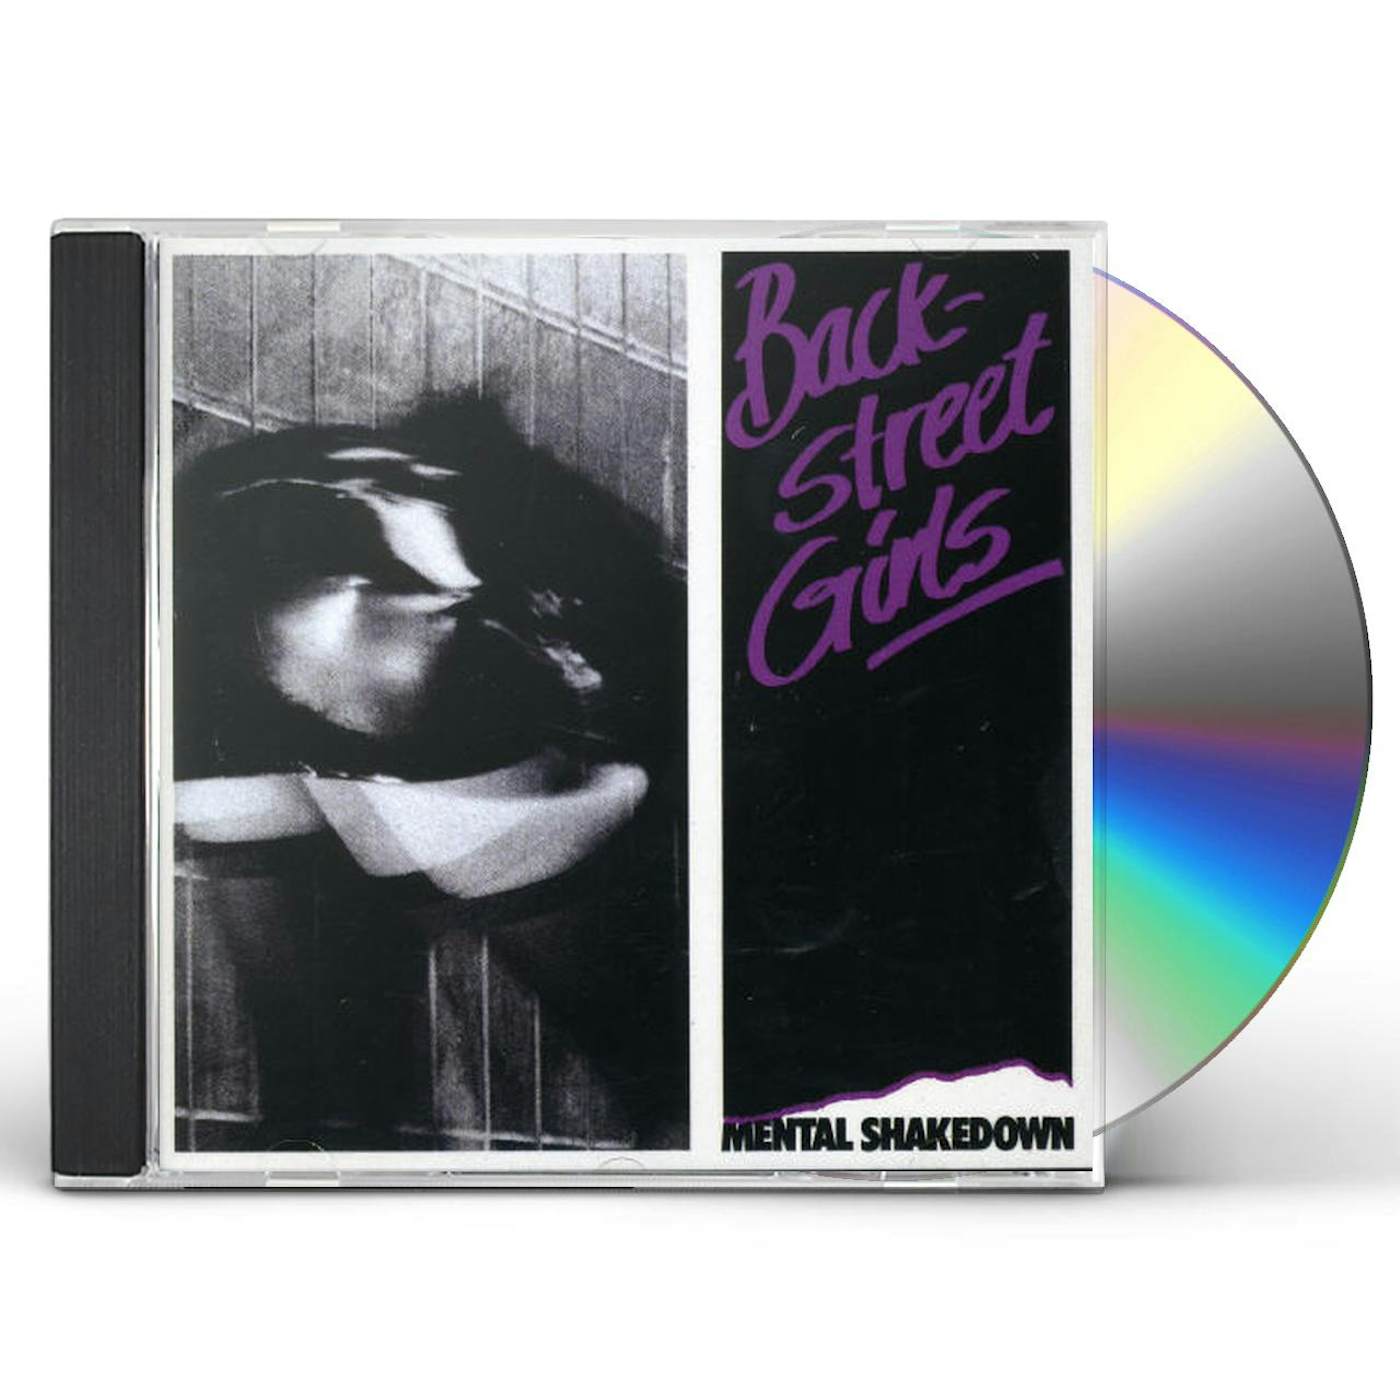 Backstreet Girls MENTAL SHAKEDOWN CD